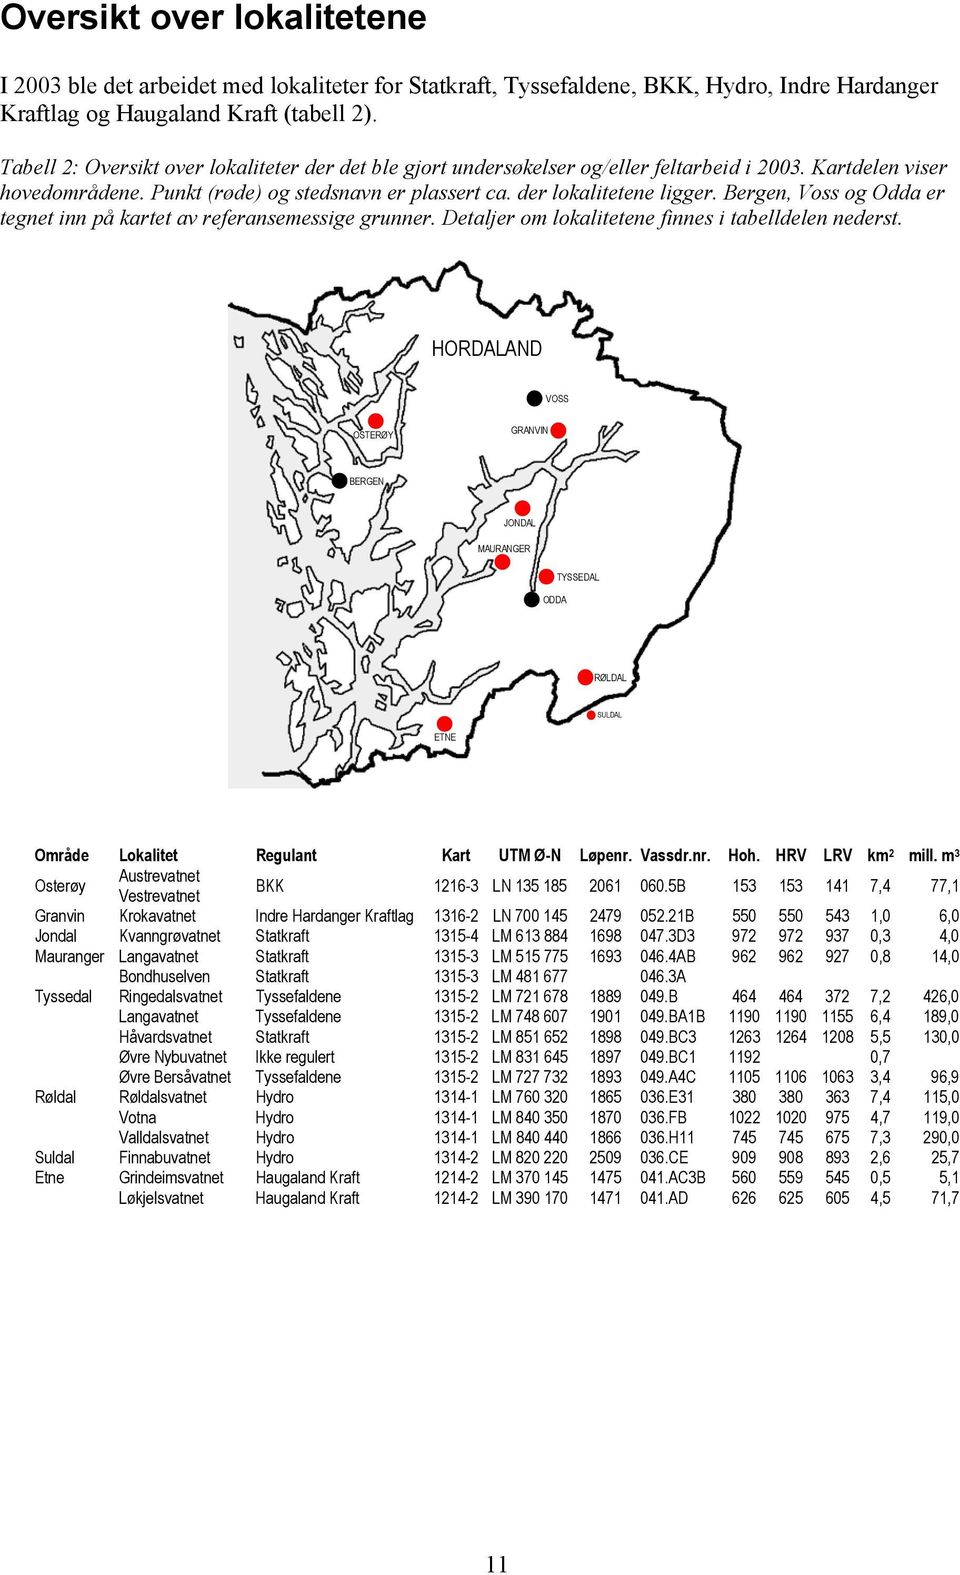 Bergen, Voss og Odda er tegnet inn på kartet av referansemessige grunner. Detaljer om lokalitetene finnes i tabelldelen nederst.